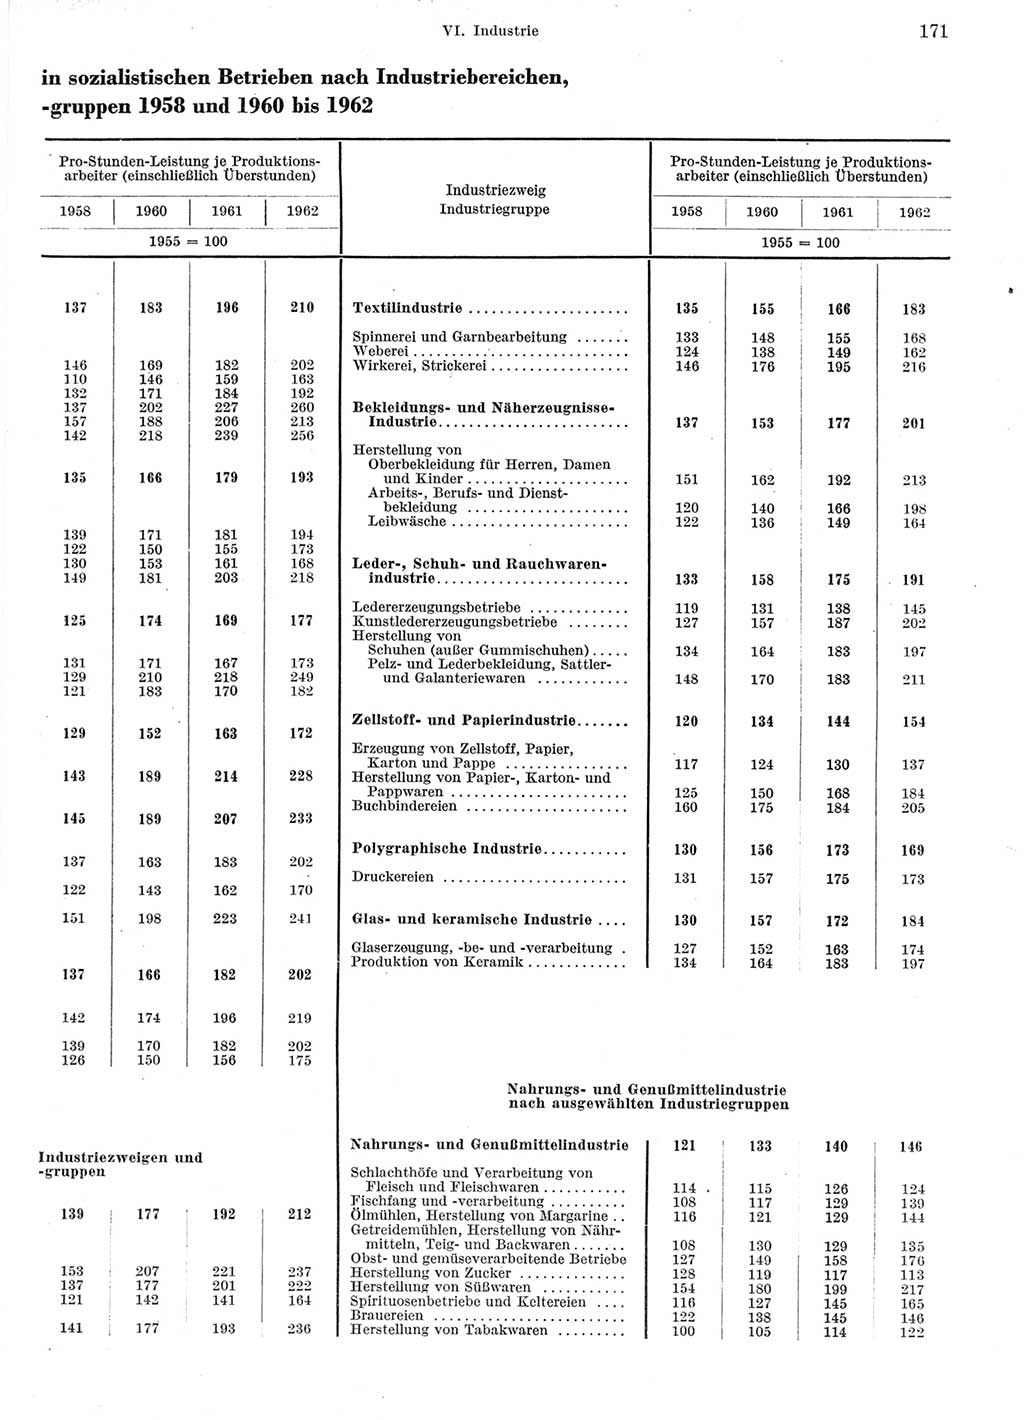 Statistisches Jahrbuch der Deutschen Demokratischen Republik (DDR) 1964, Seite 171 (Stat. Jb. DDR 1964, S. 171)